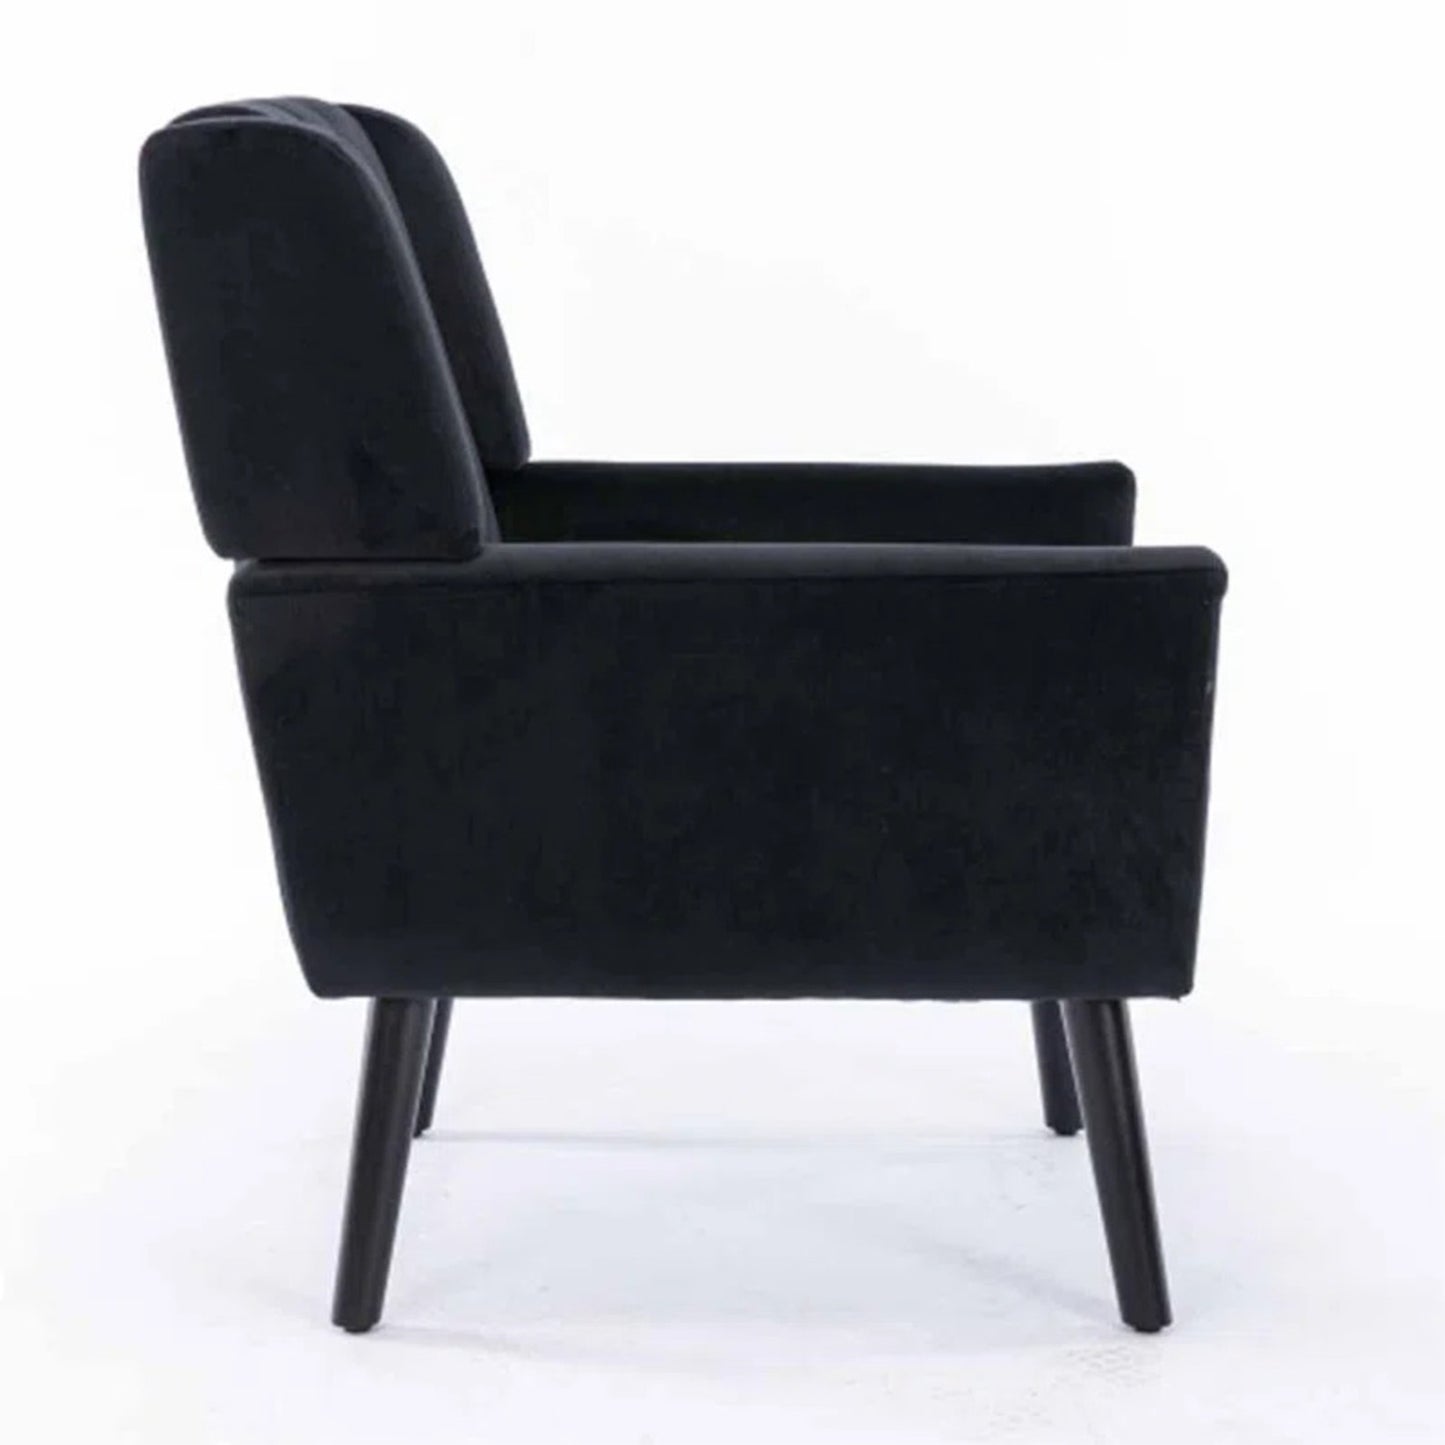 Luxurious Double Cushion Velvet Chair Grey